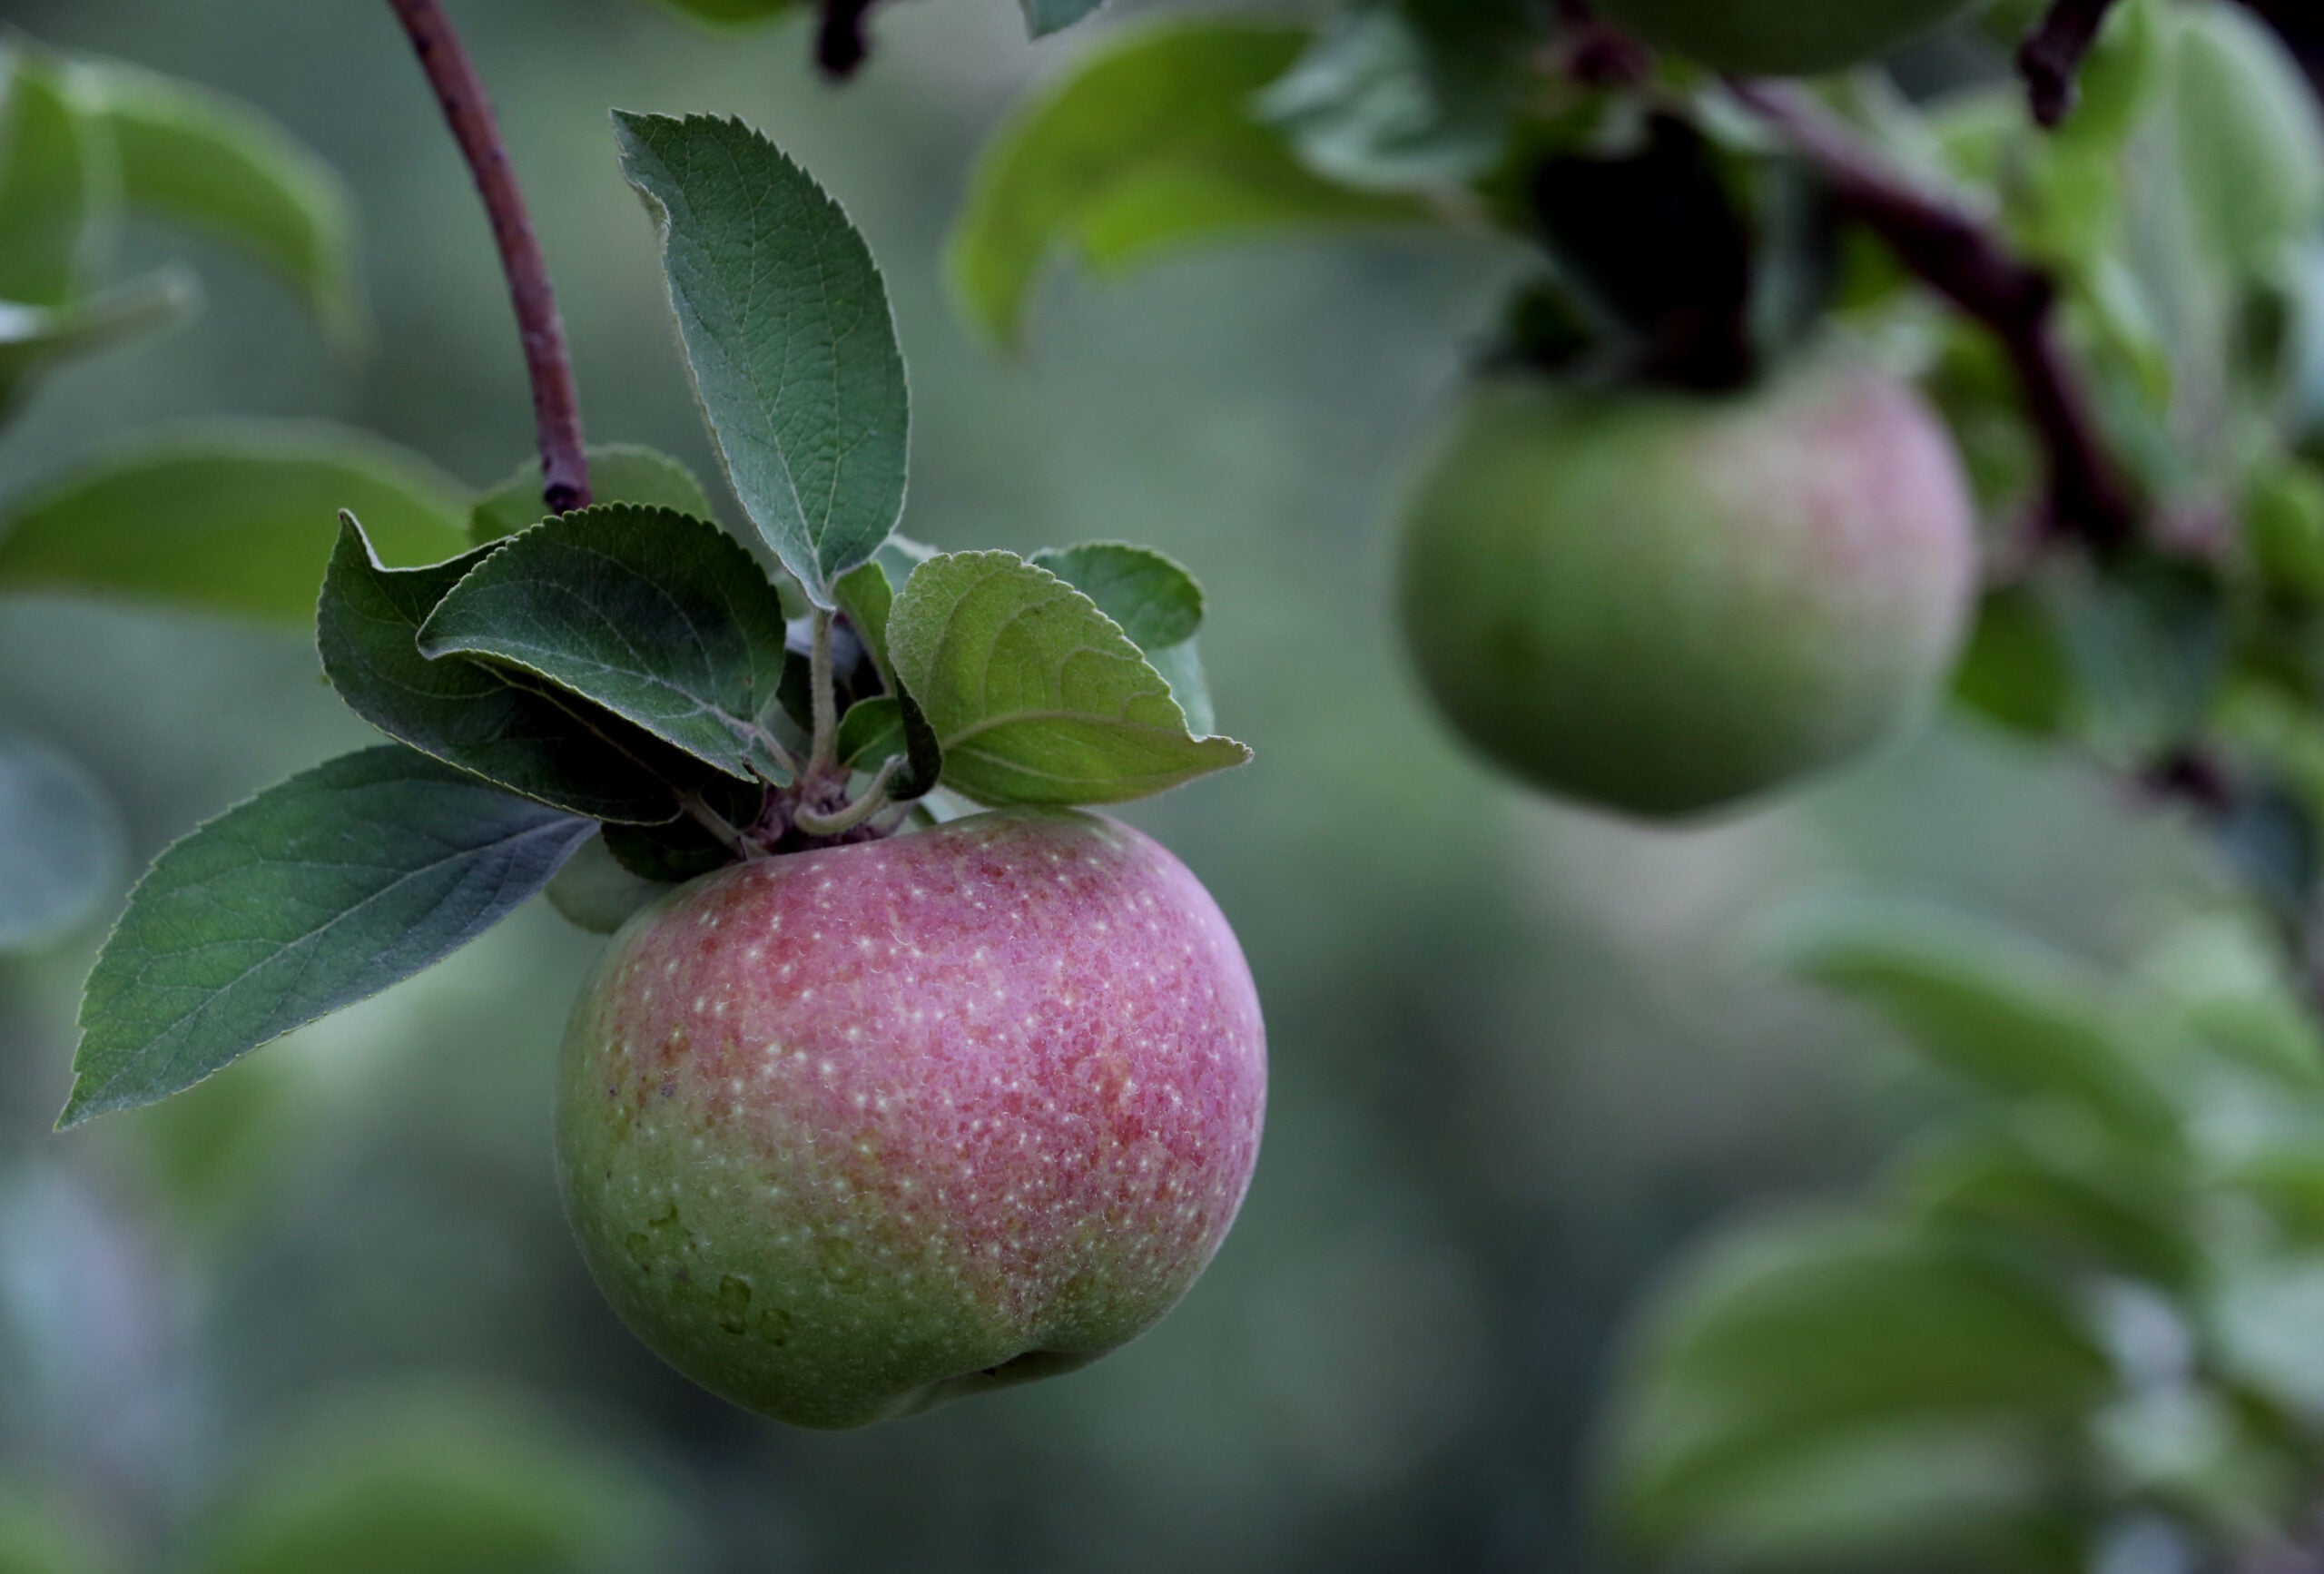 Mann Orchards in Methuen